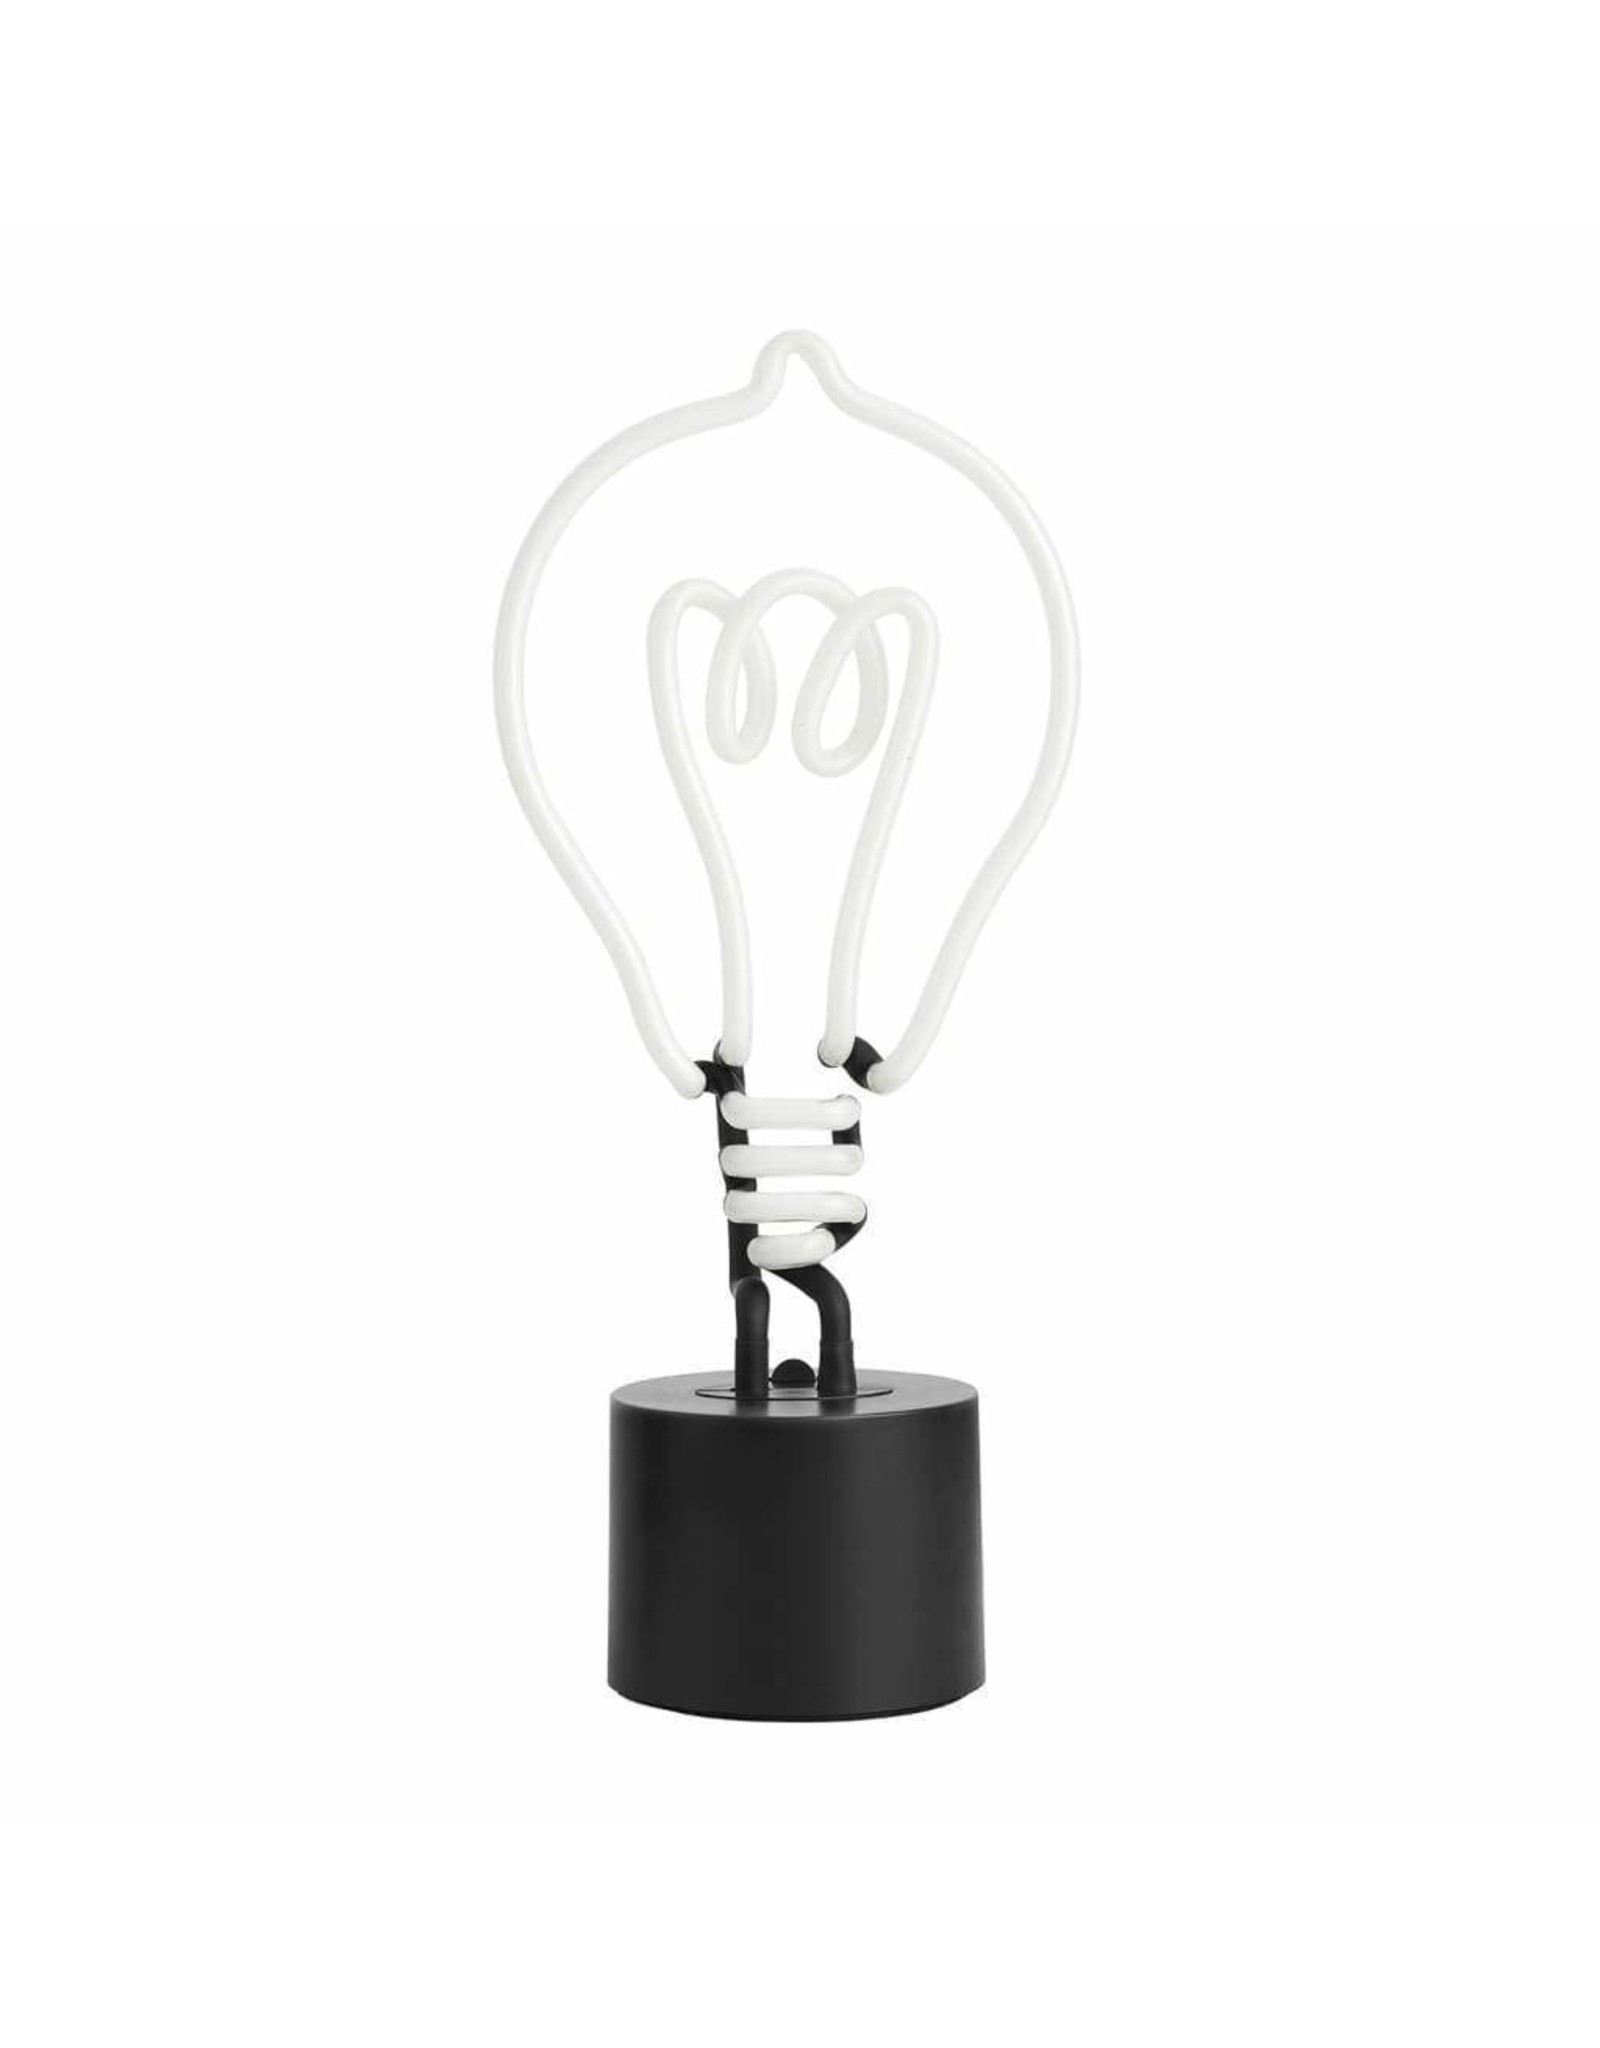 Amped & Co Light Bulb Neon Light